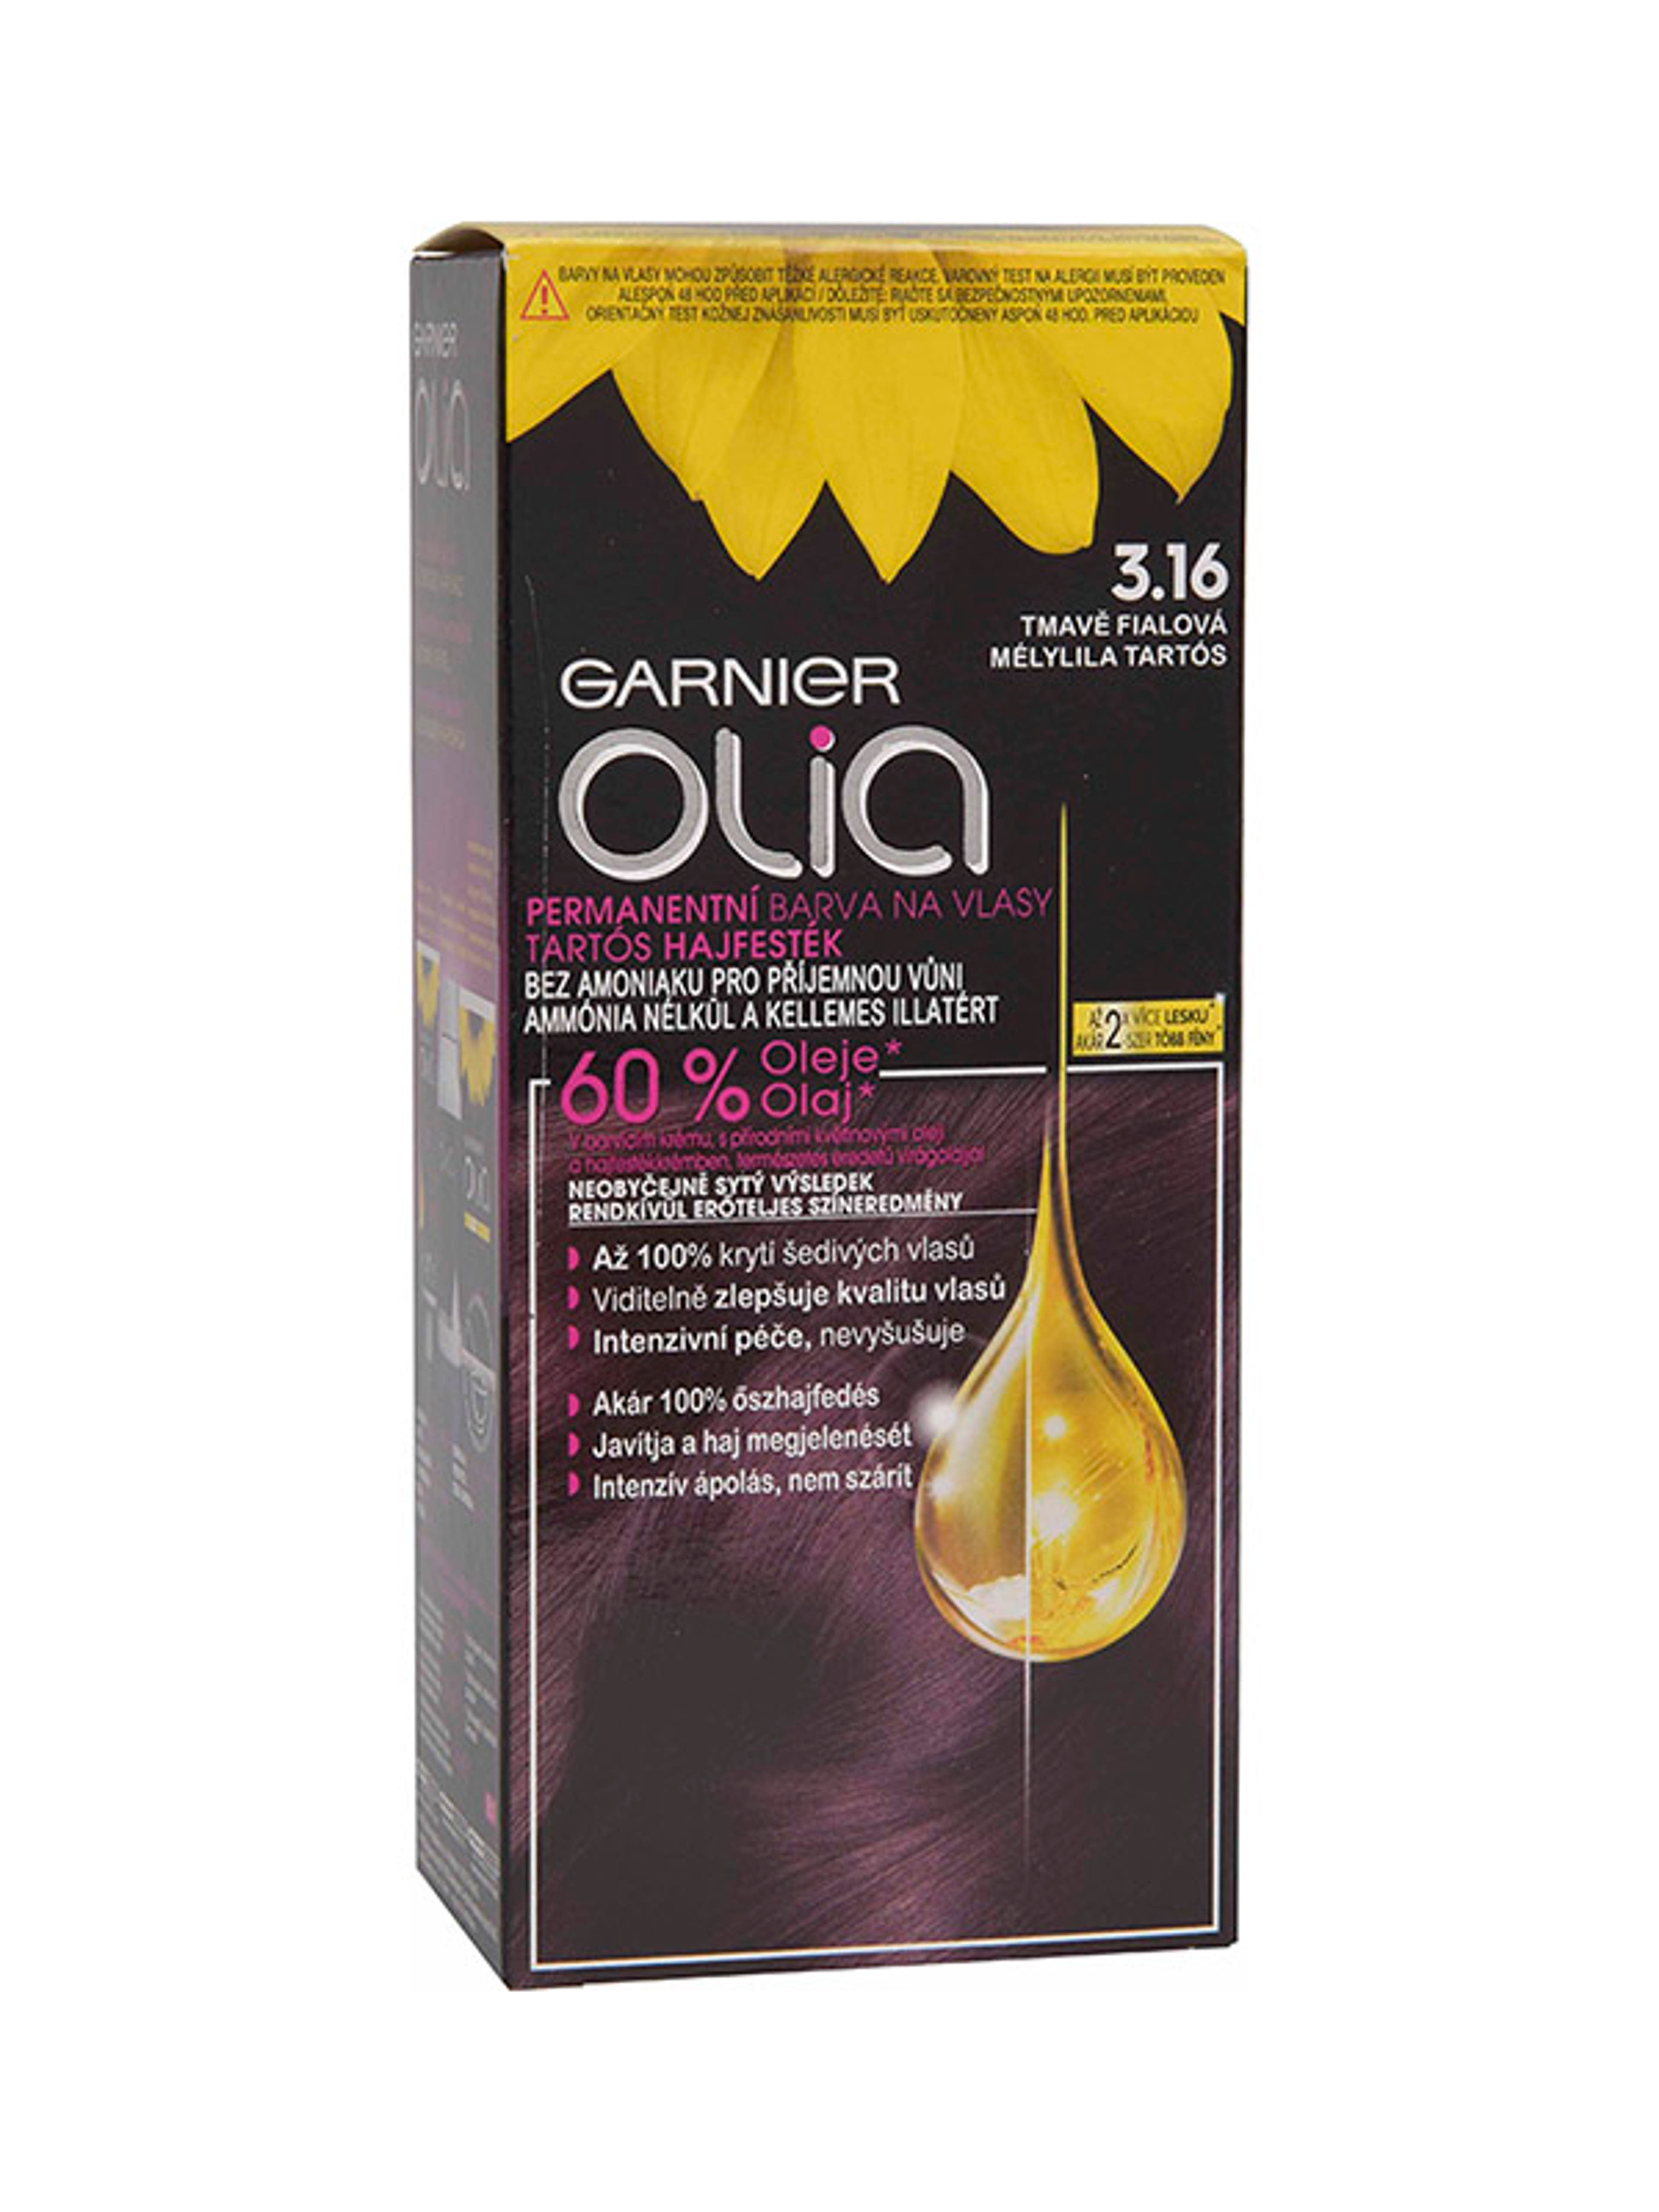 Garnier Olia tartós hajfesték 3.16 Mélylila tartós - 1 db